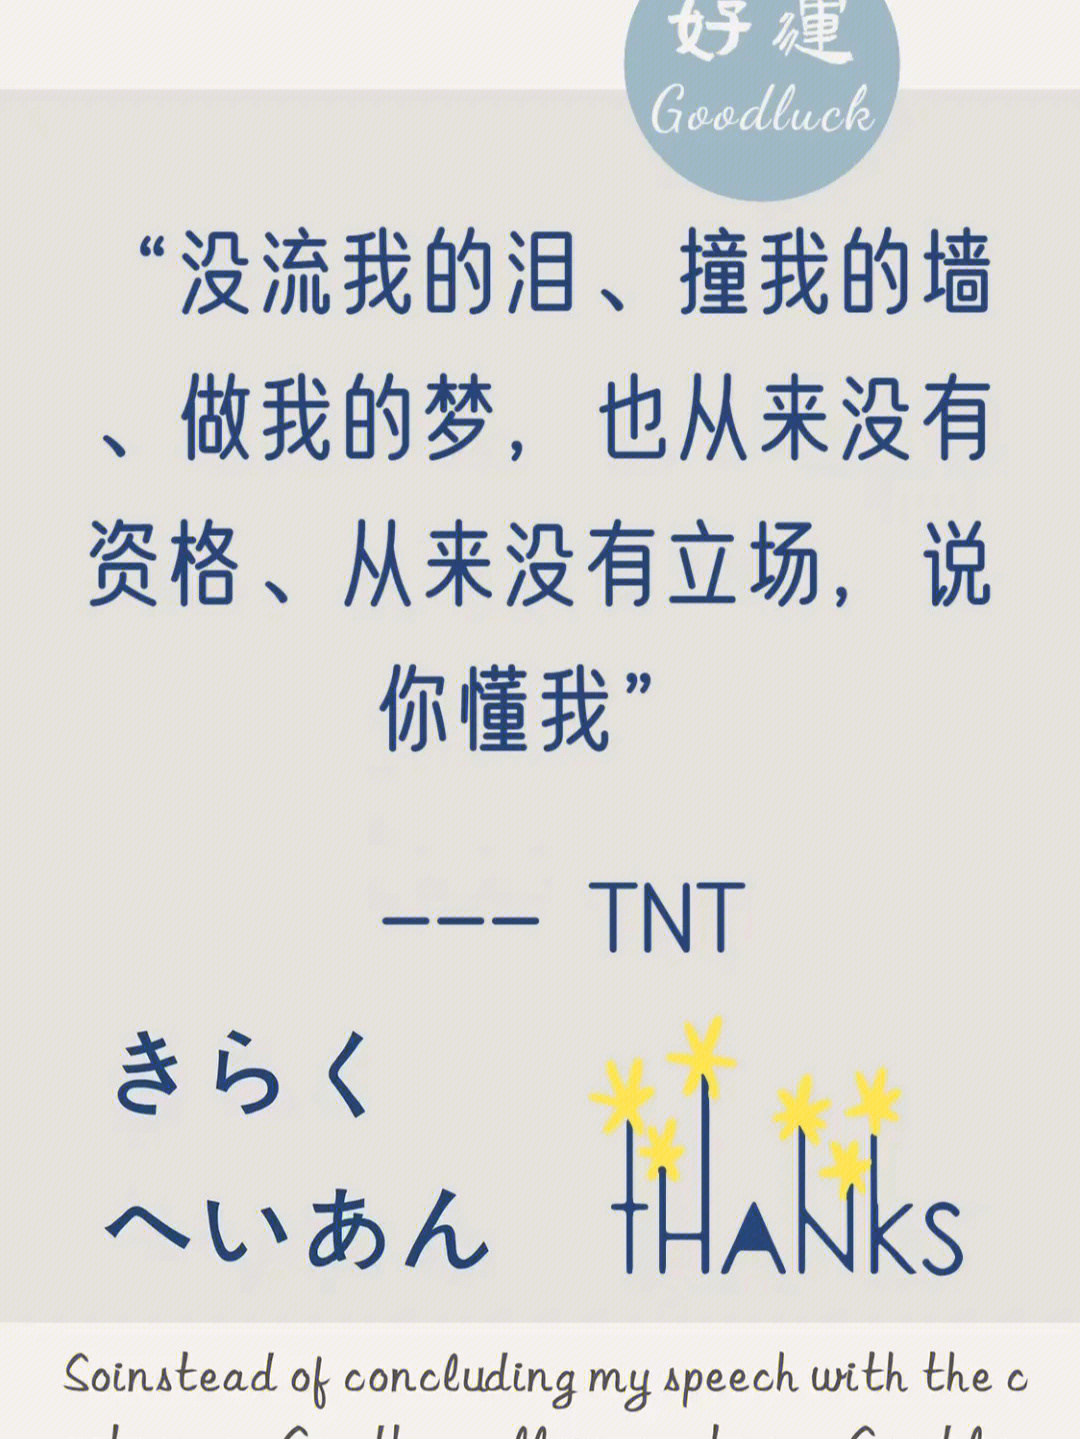 TNT神仙语录 句子图片